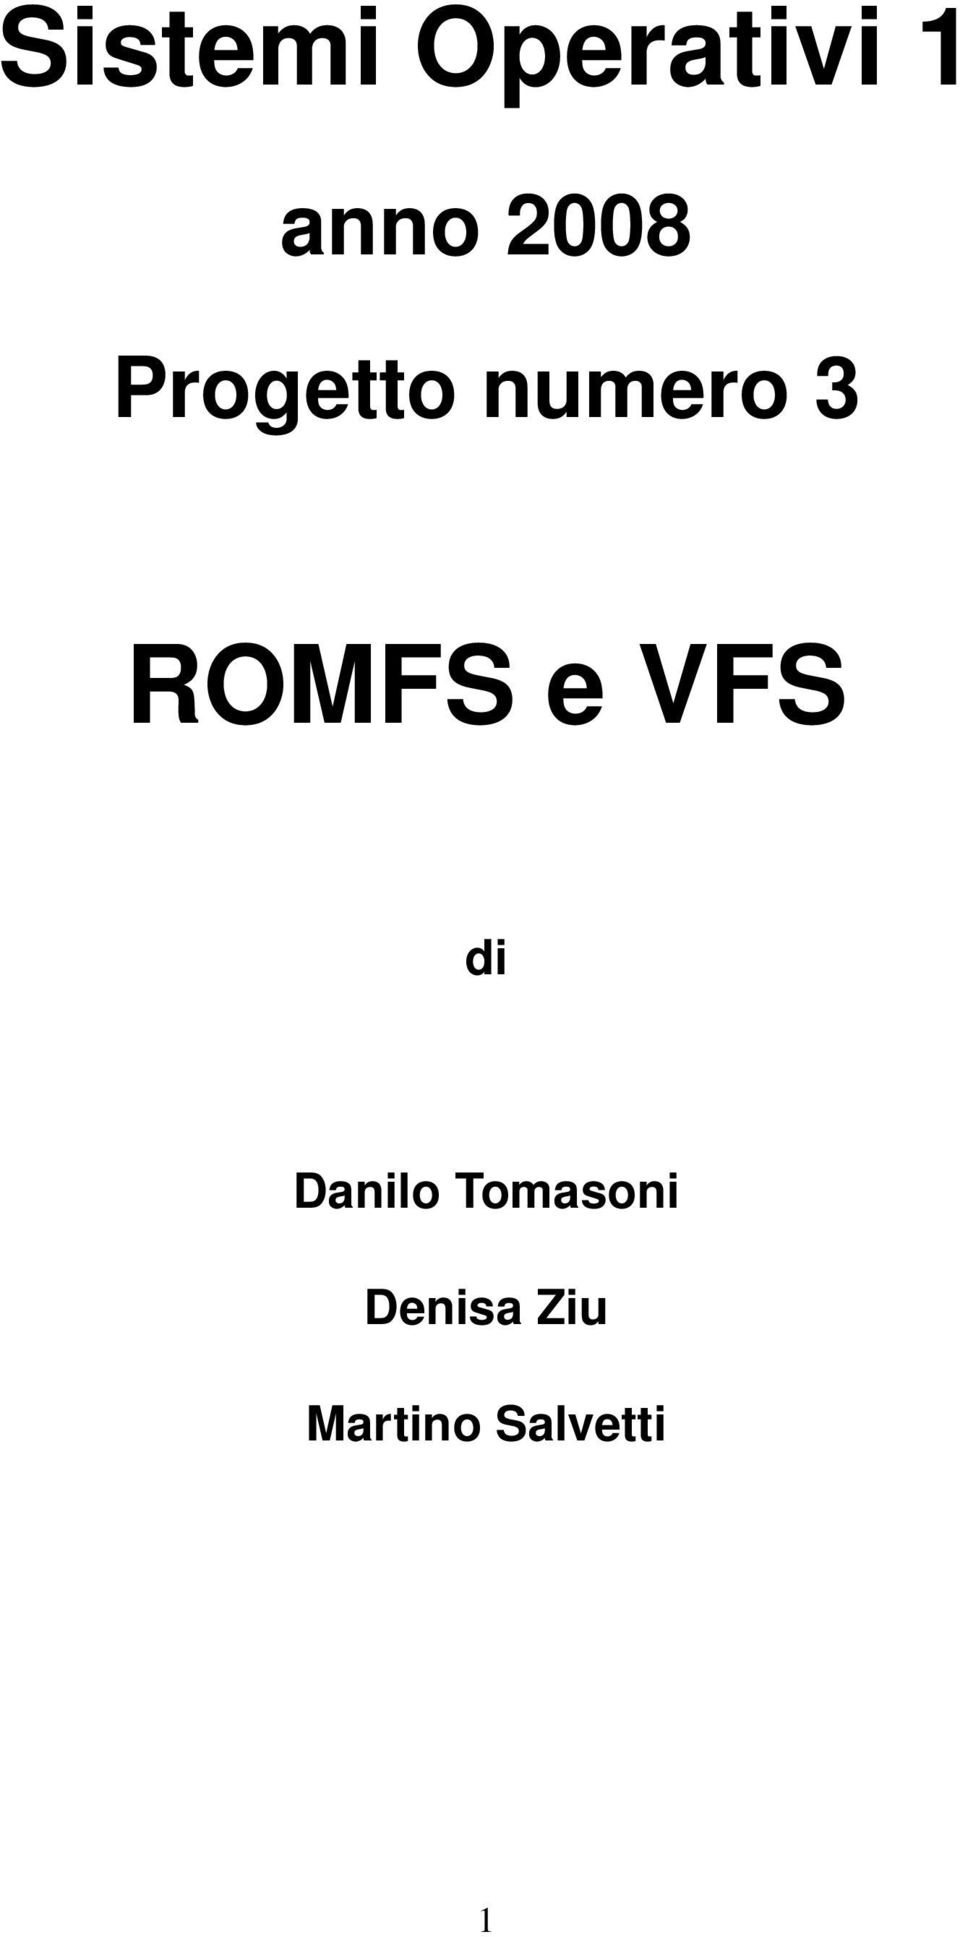 ROMFS e VFS di Danilo